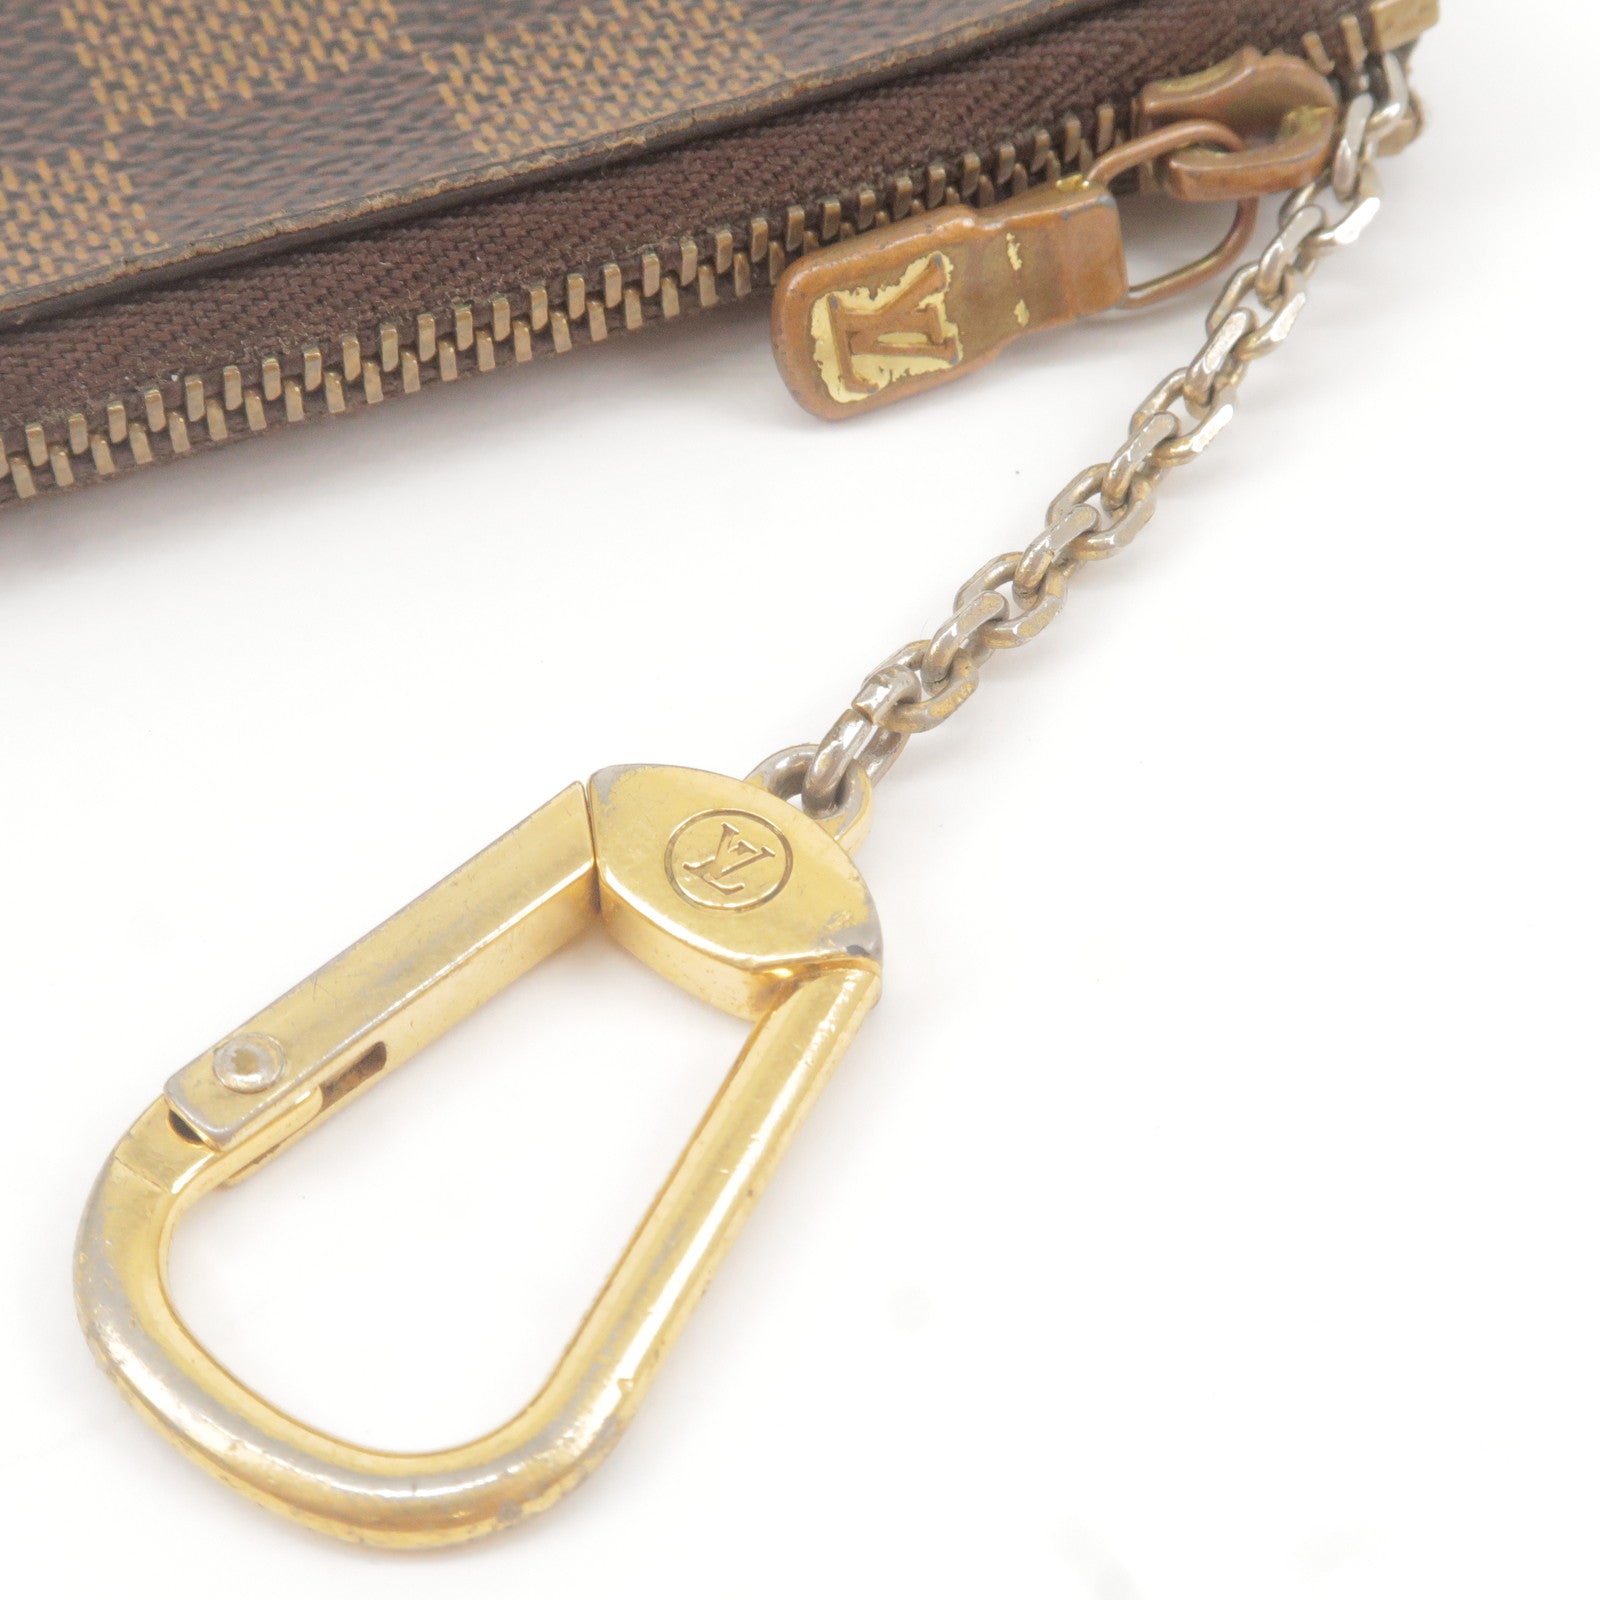 Louis Vuitton Key Pouch (M62650, N62658)